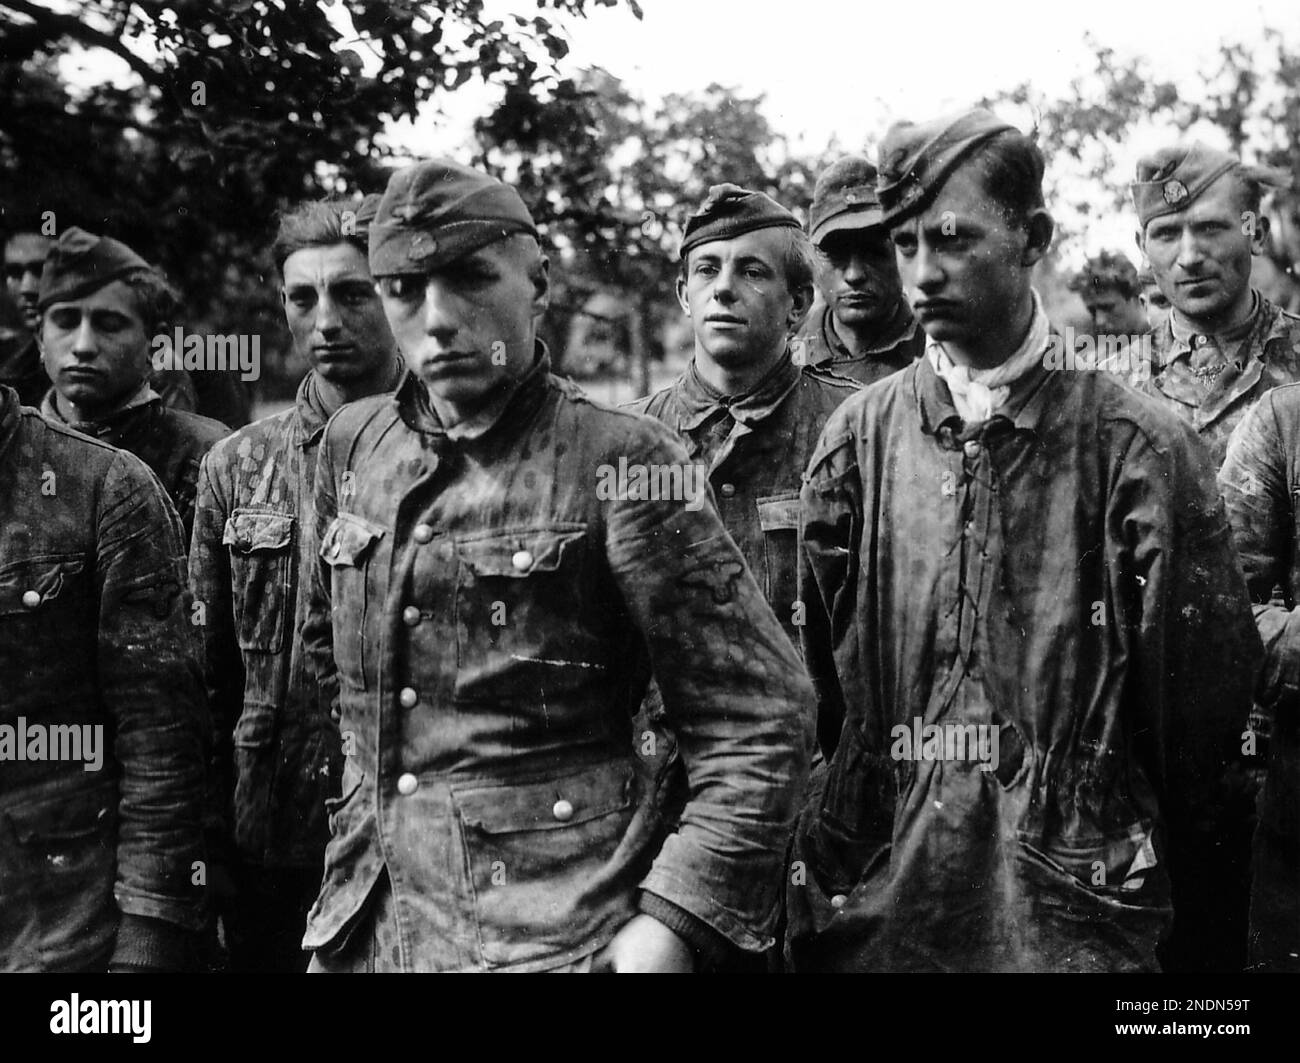 Soldats allemands du Waffen SS, prisonniers en Normandie, 1944. Les prisonniers sont membres de la division de Panzer de 12th SS Hitlerjugend Banque D'Images